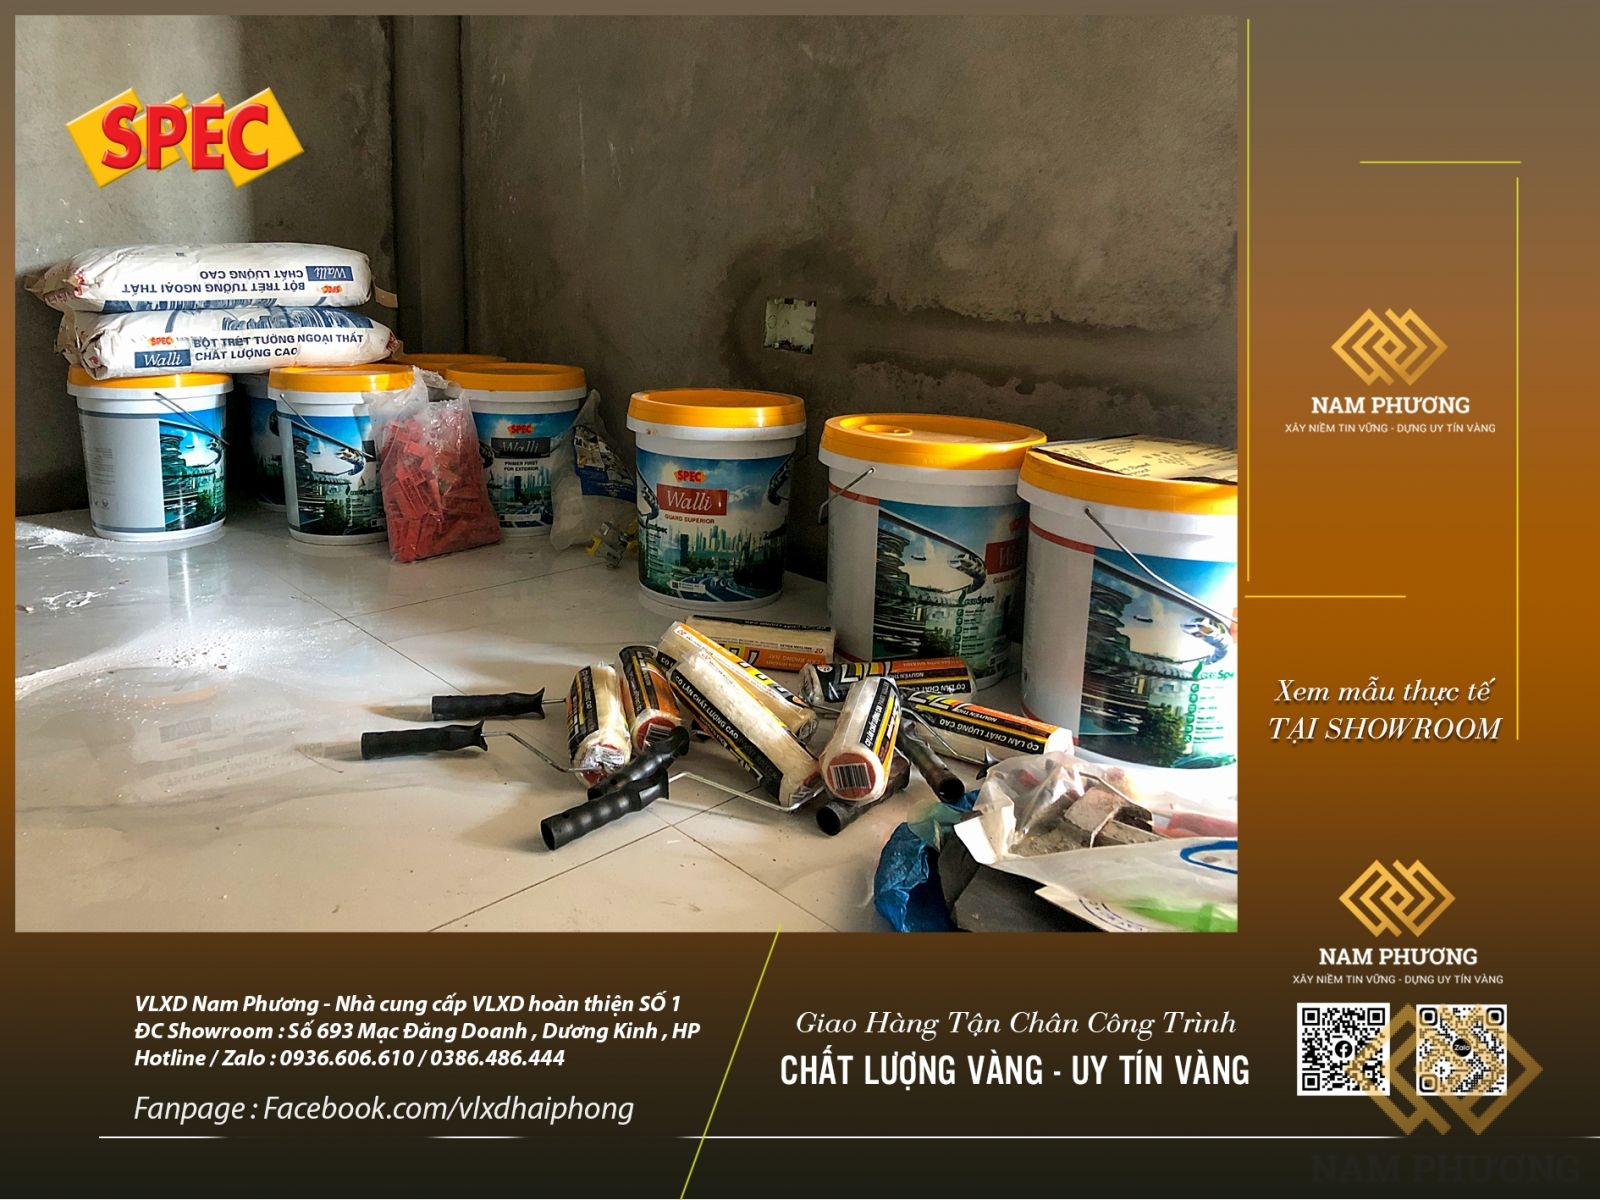 VLXD Nam Phương - Nhà phân phối Sơn bán chạy nhất khu vực 